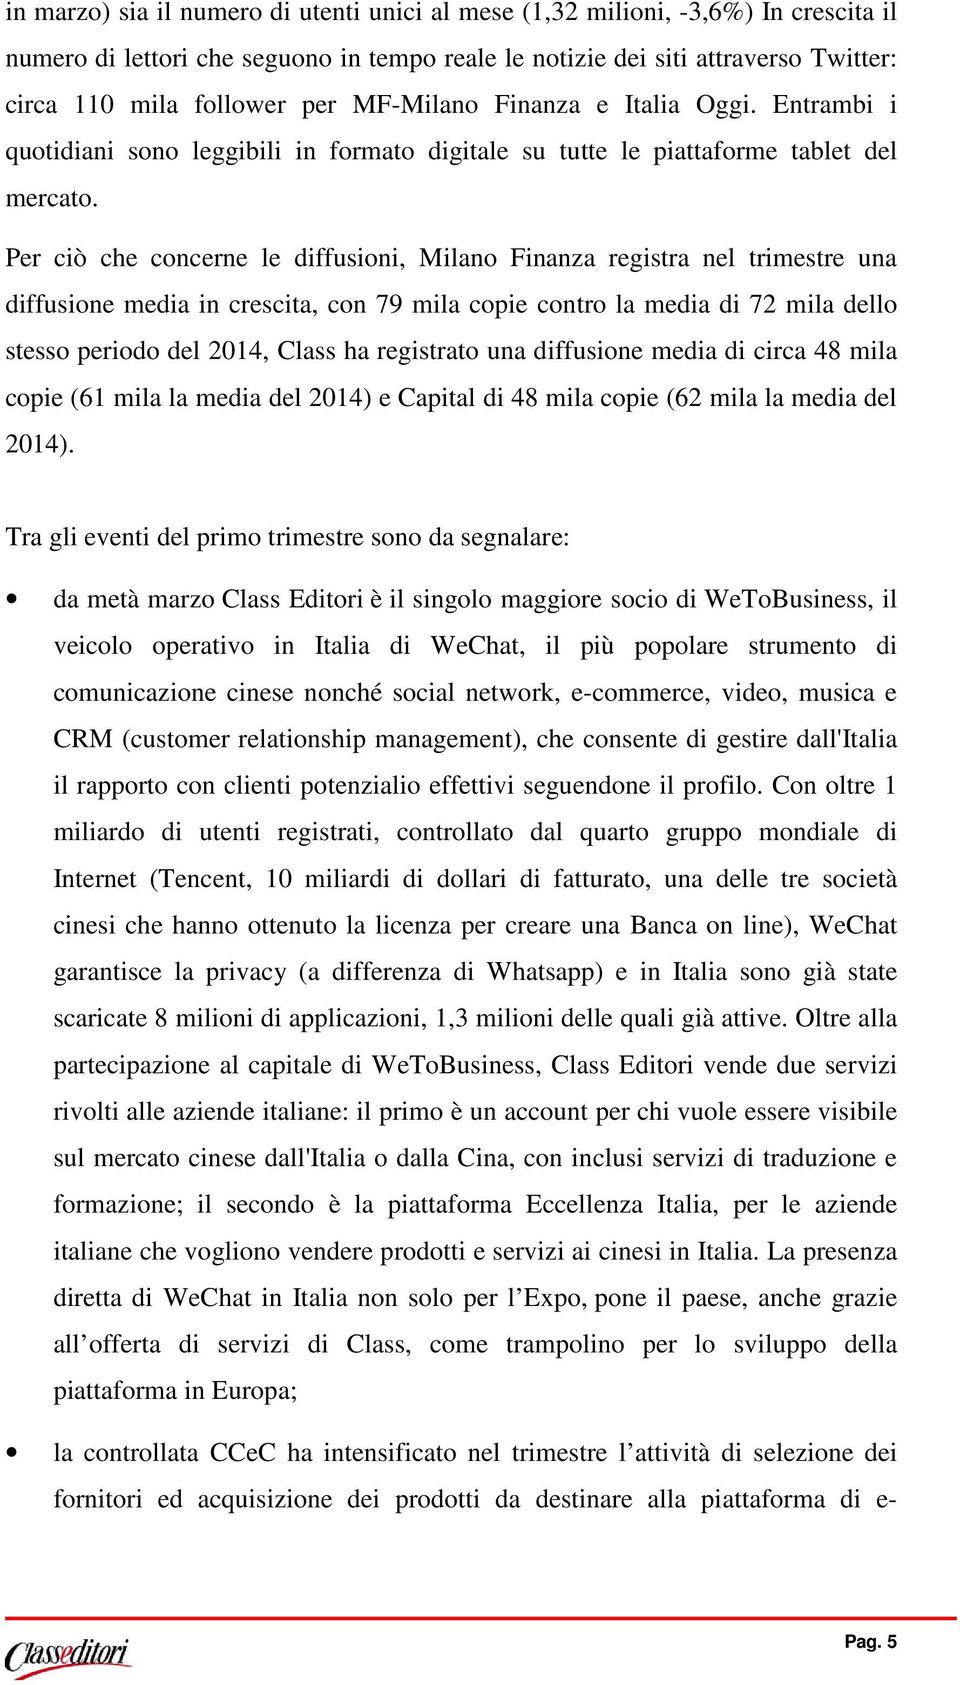 Per ciò che concerne le diffusioni, Milano Finanza registra nel trimestre una diffusione media in crescita, con 79 mila copie contro la media di 72 mila dello stesso periodo del 2014, Class ha